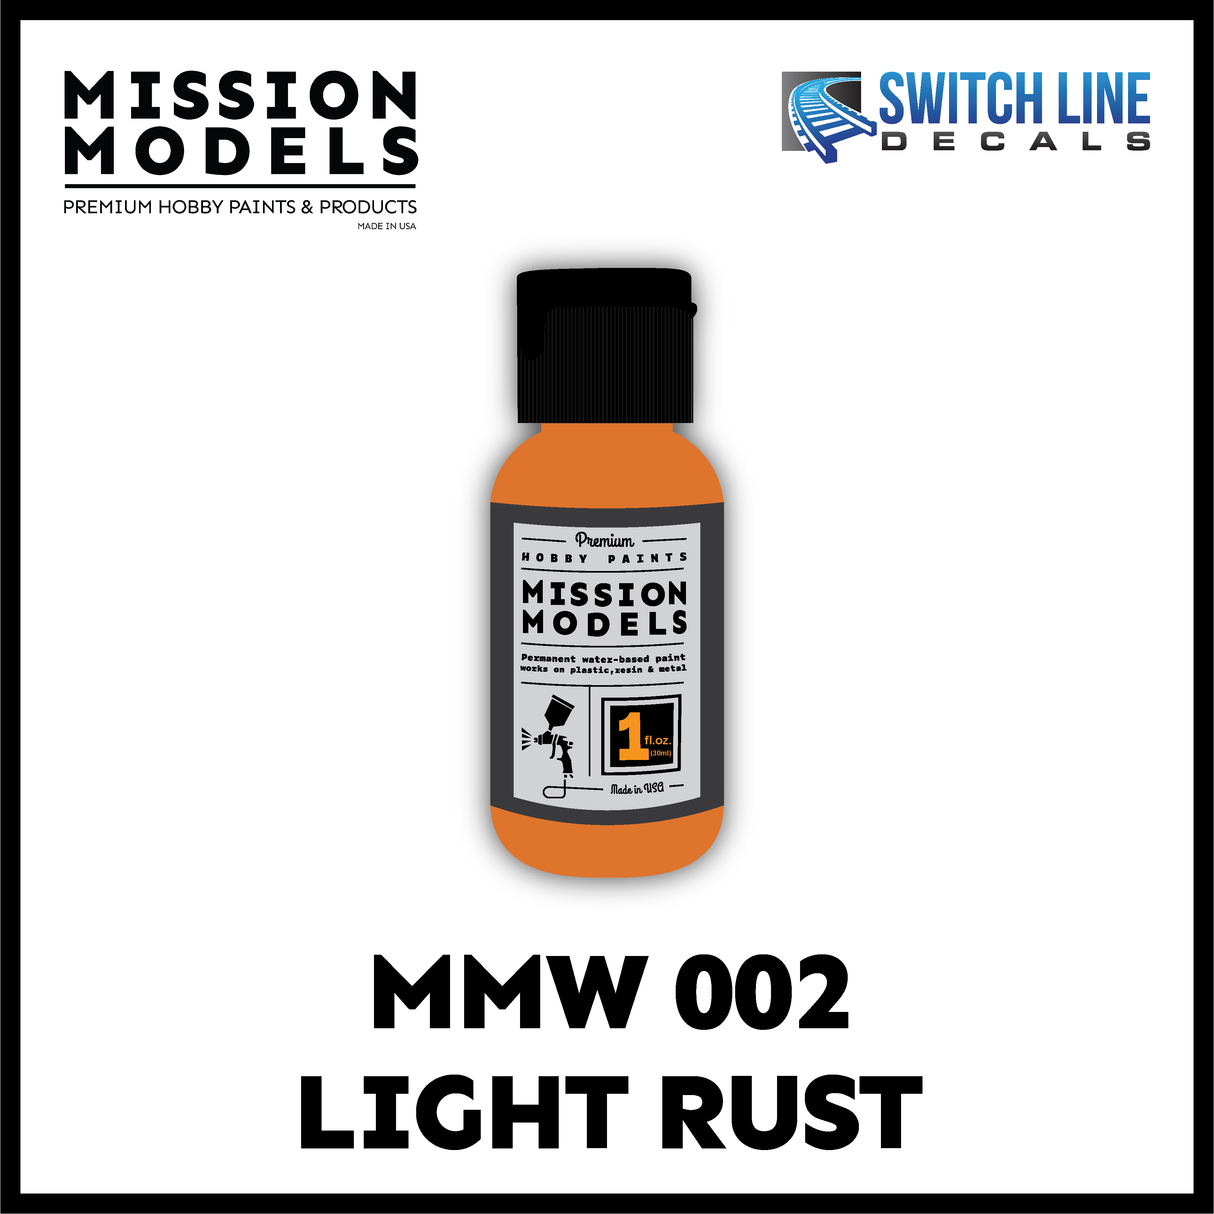 Mission Models Paint Light Rust 1oz